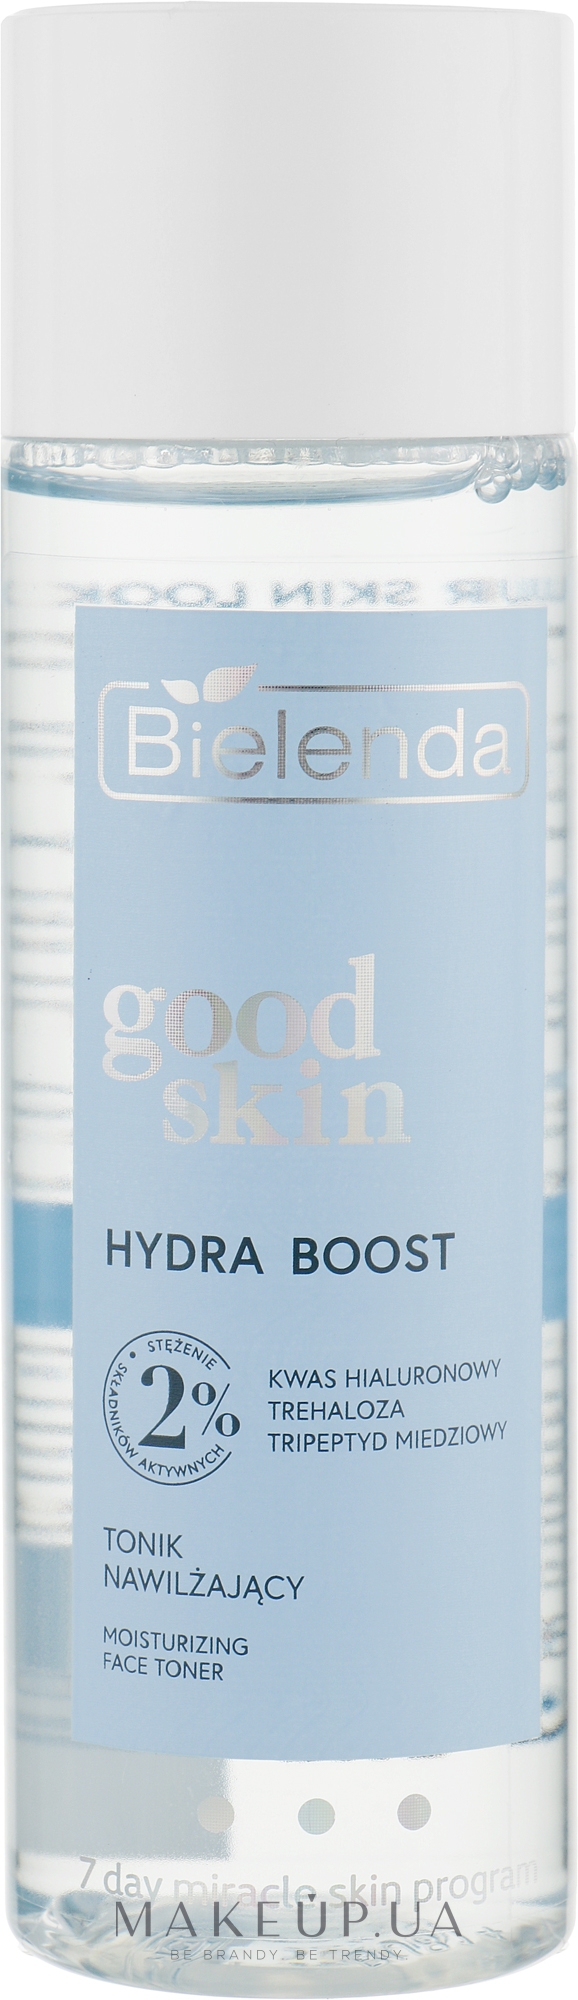 Зволожувальний тонік з гіалуроновою кислотою - Bielenda Good Skin Hydra Boost Moisturizing Face Toner — фото 200ml